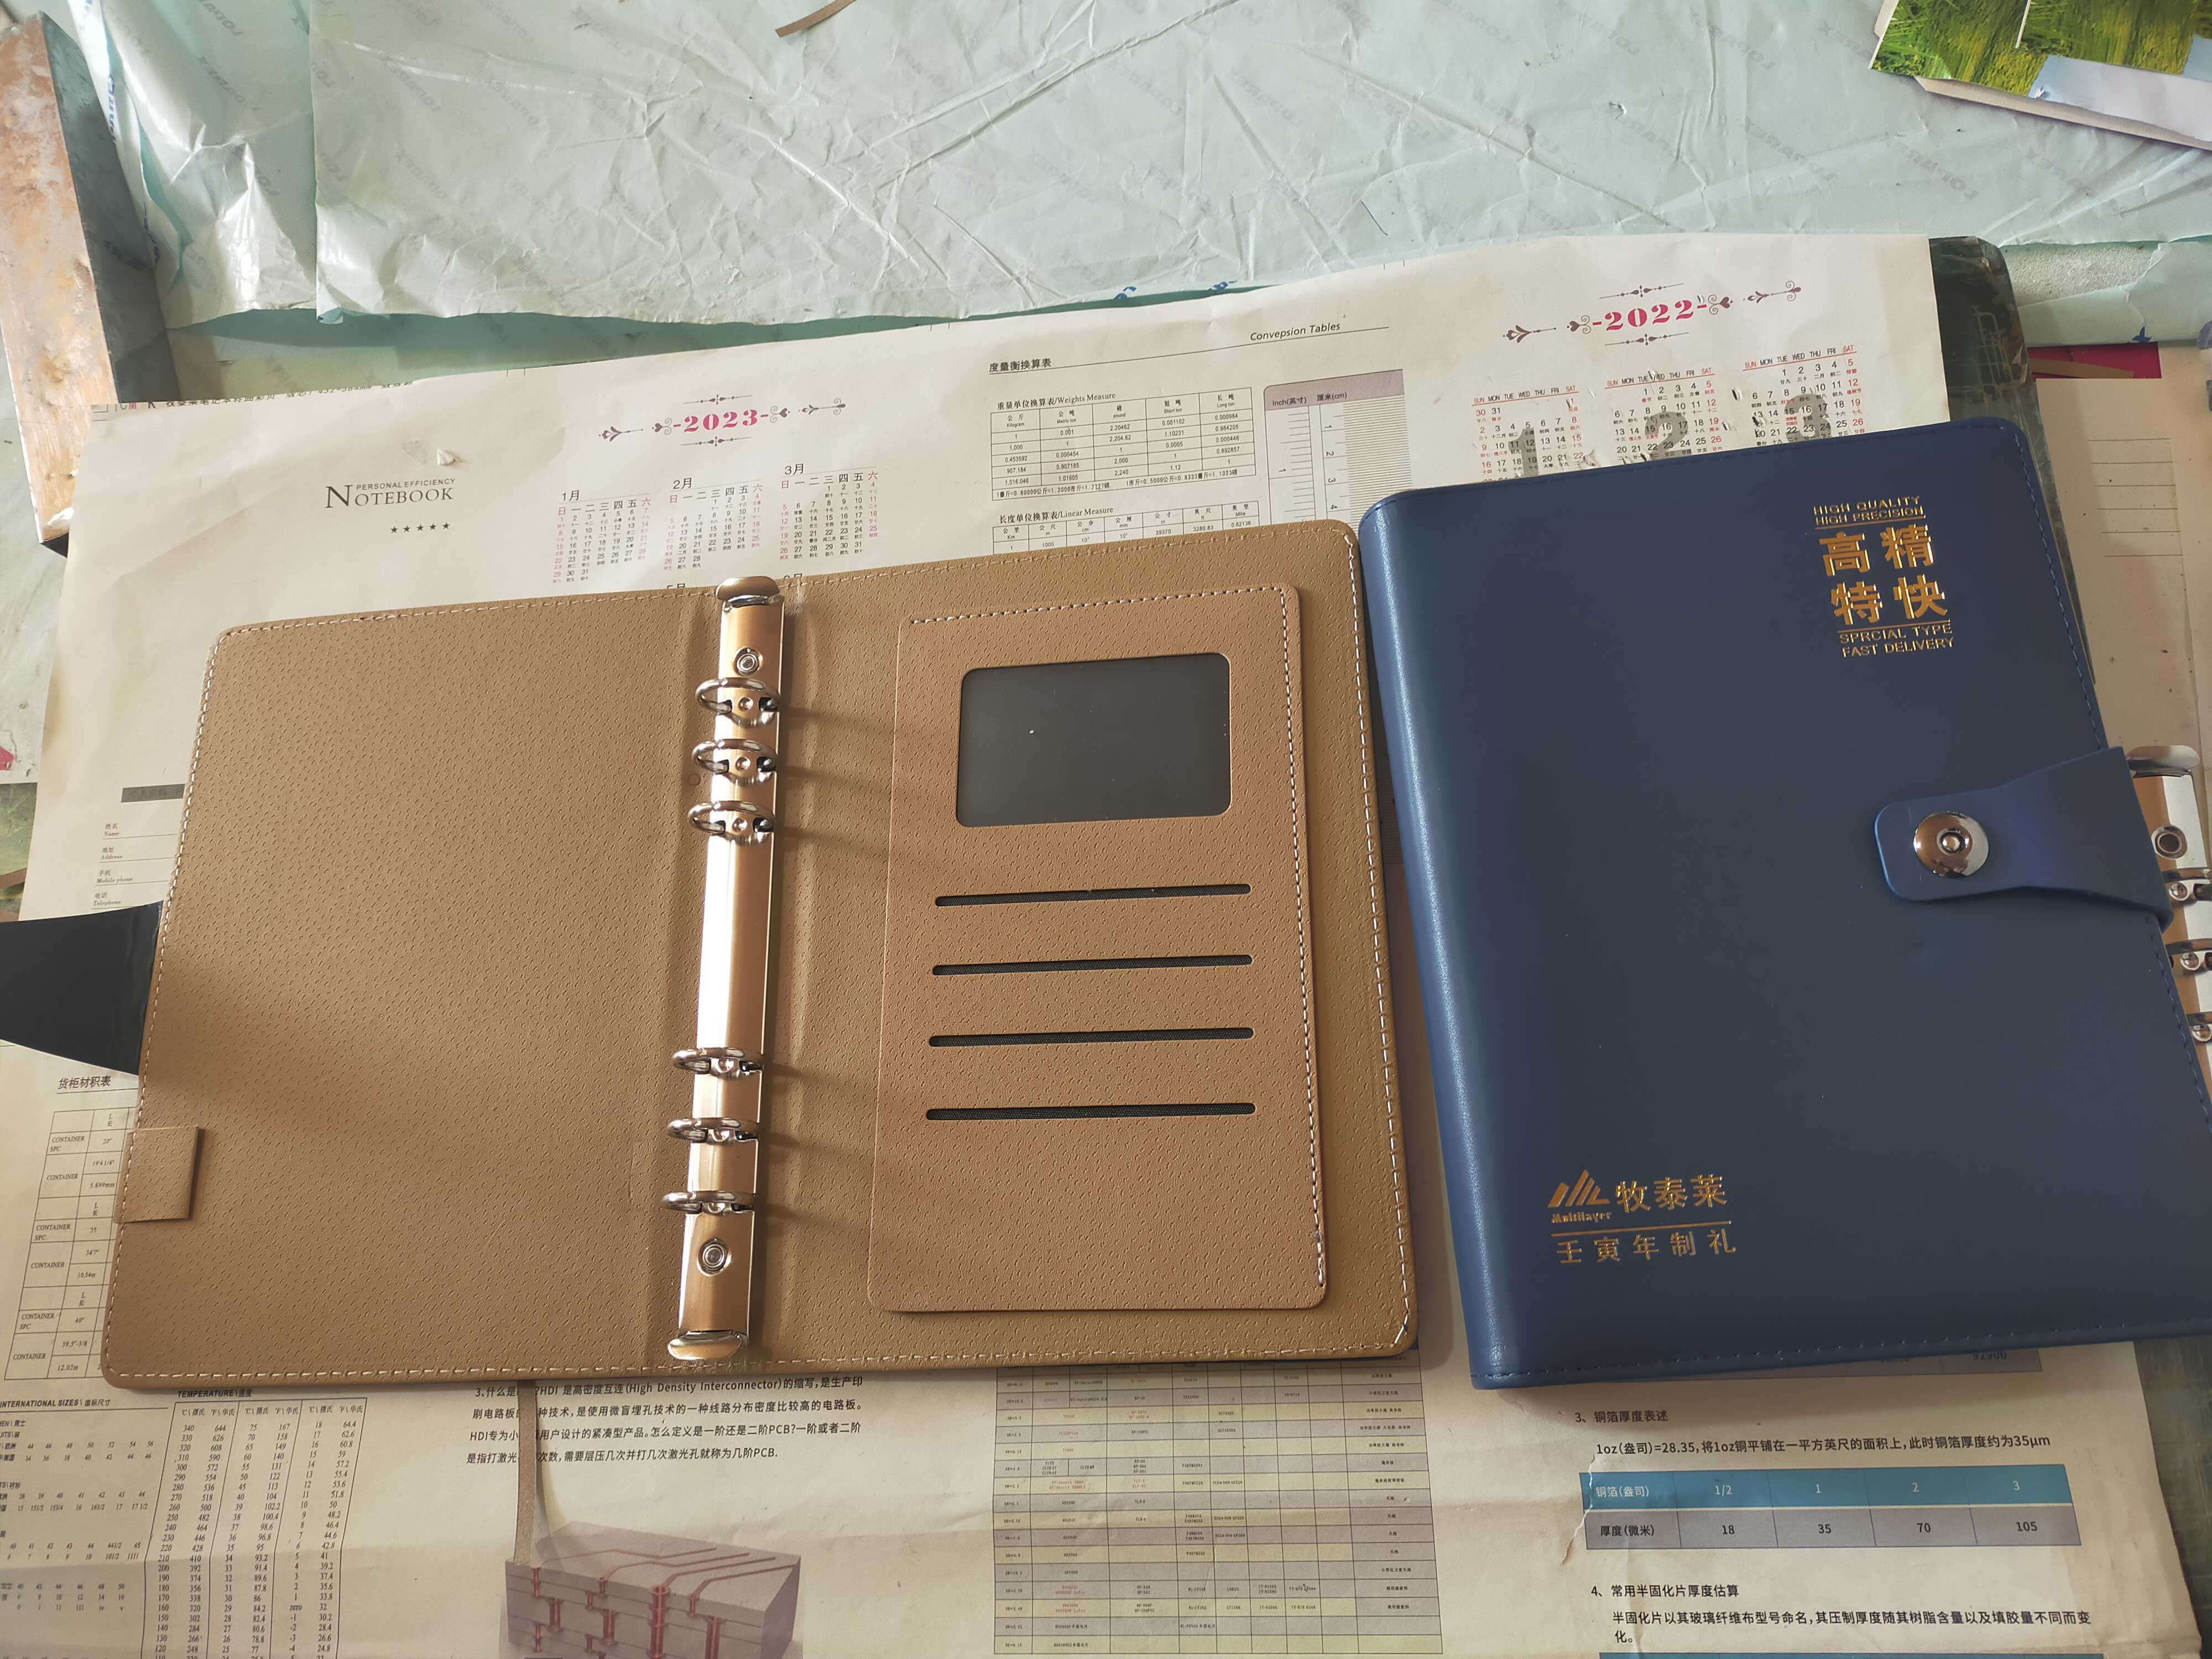 长沙牧泰莱电路技术有限公司定制笔记本生产制作